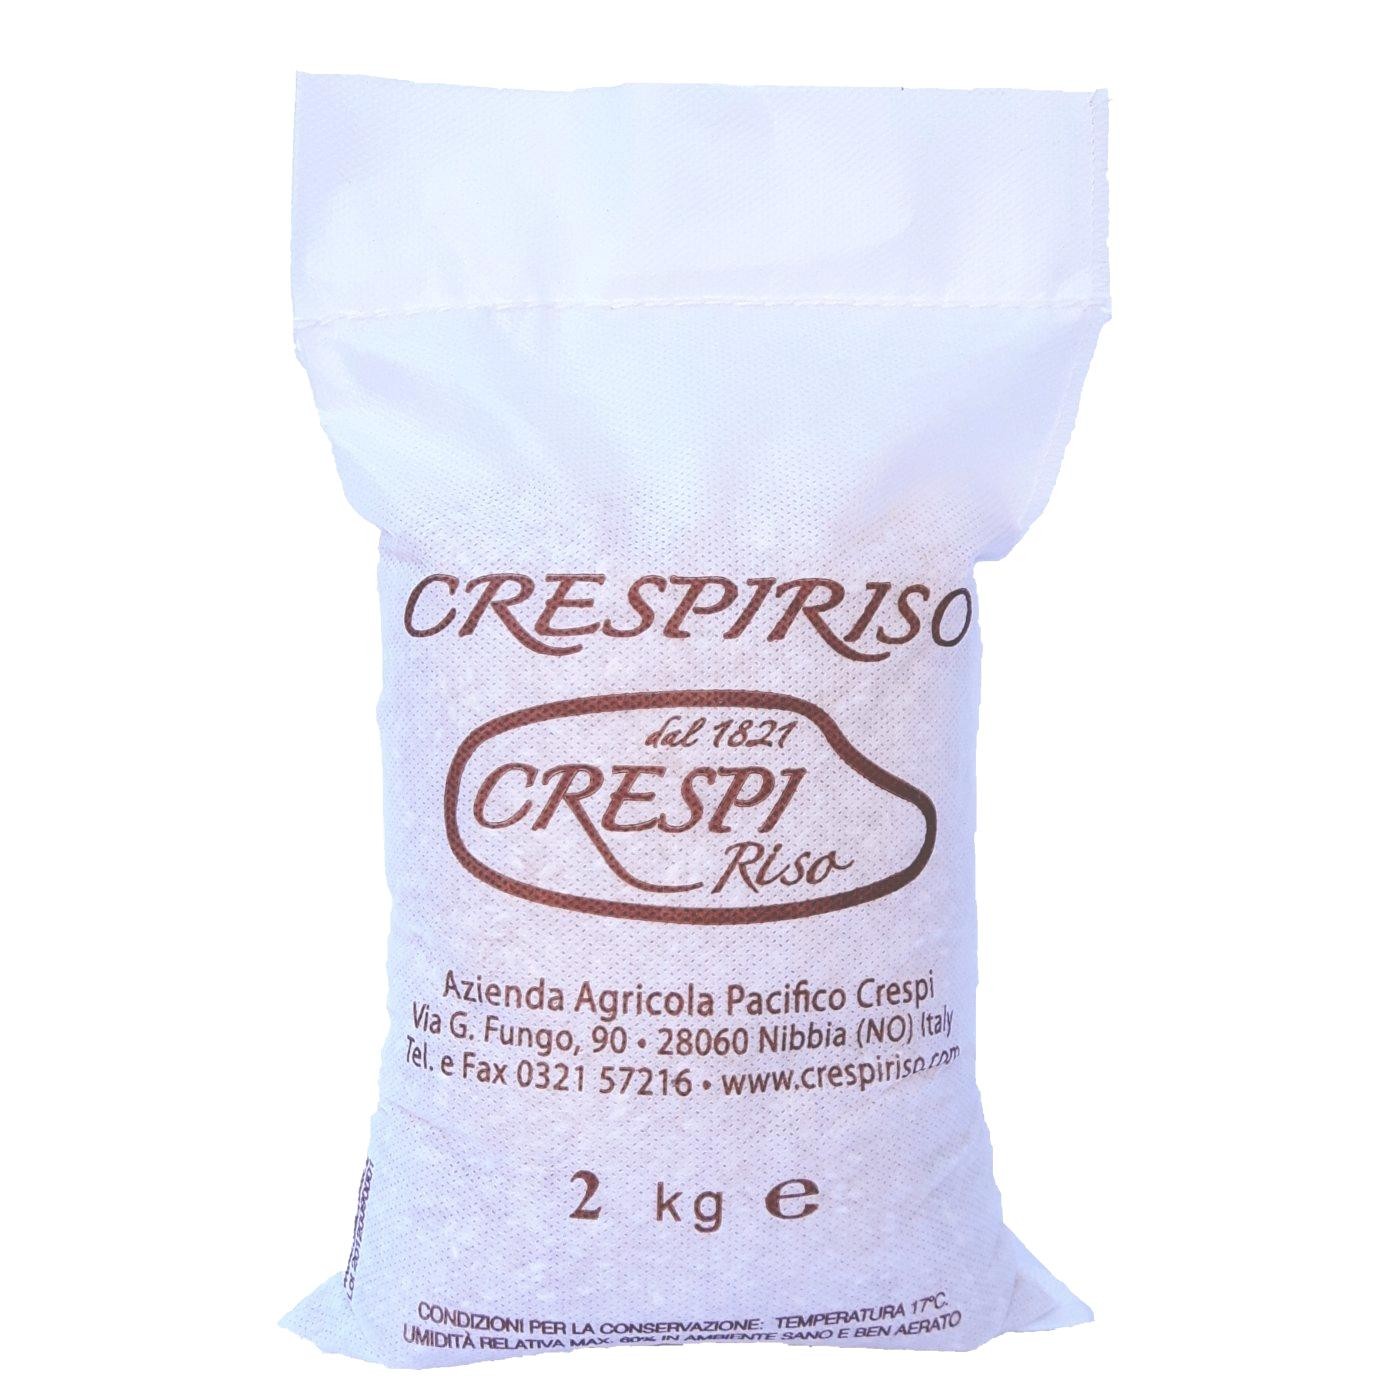 Crespiriso Arborio rice 2Kg classic crespiriso package in cotton or non-woven fabric (tnt)